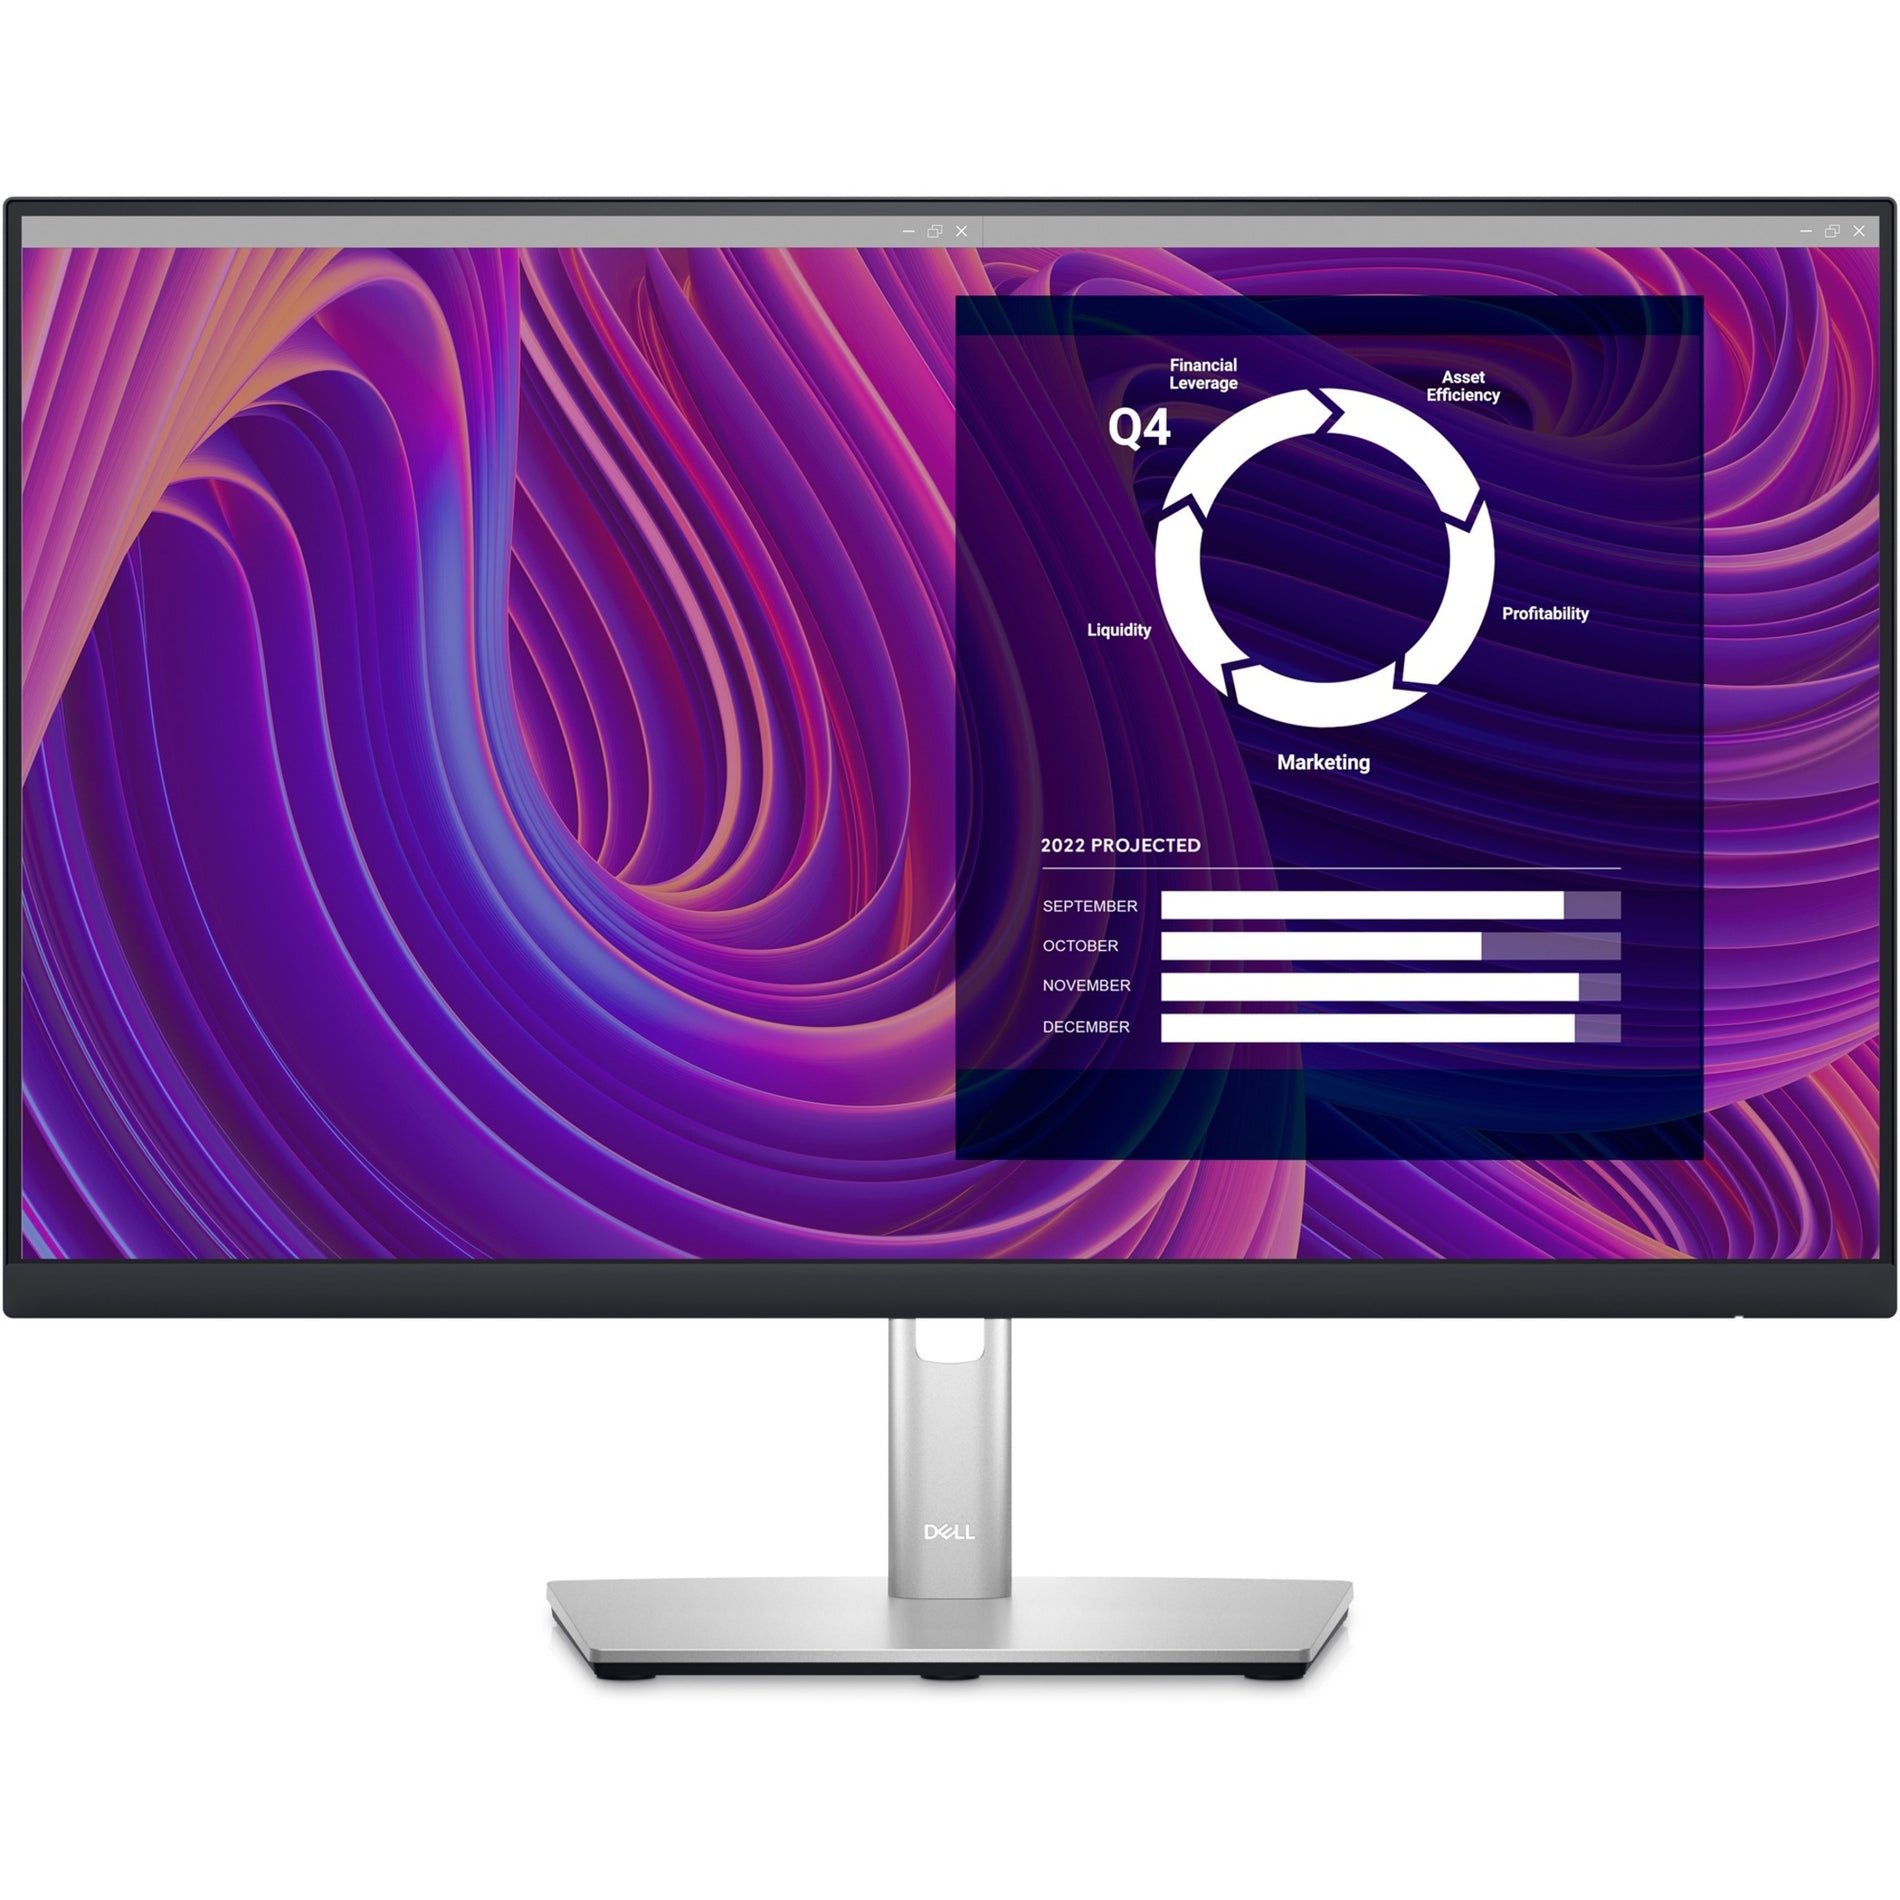 Dell P2423D 24" Class QHD LCD Monitor - 16:9 - Black, Silver (DELL-P2423D)